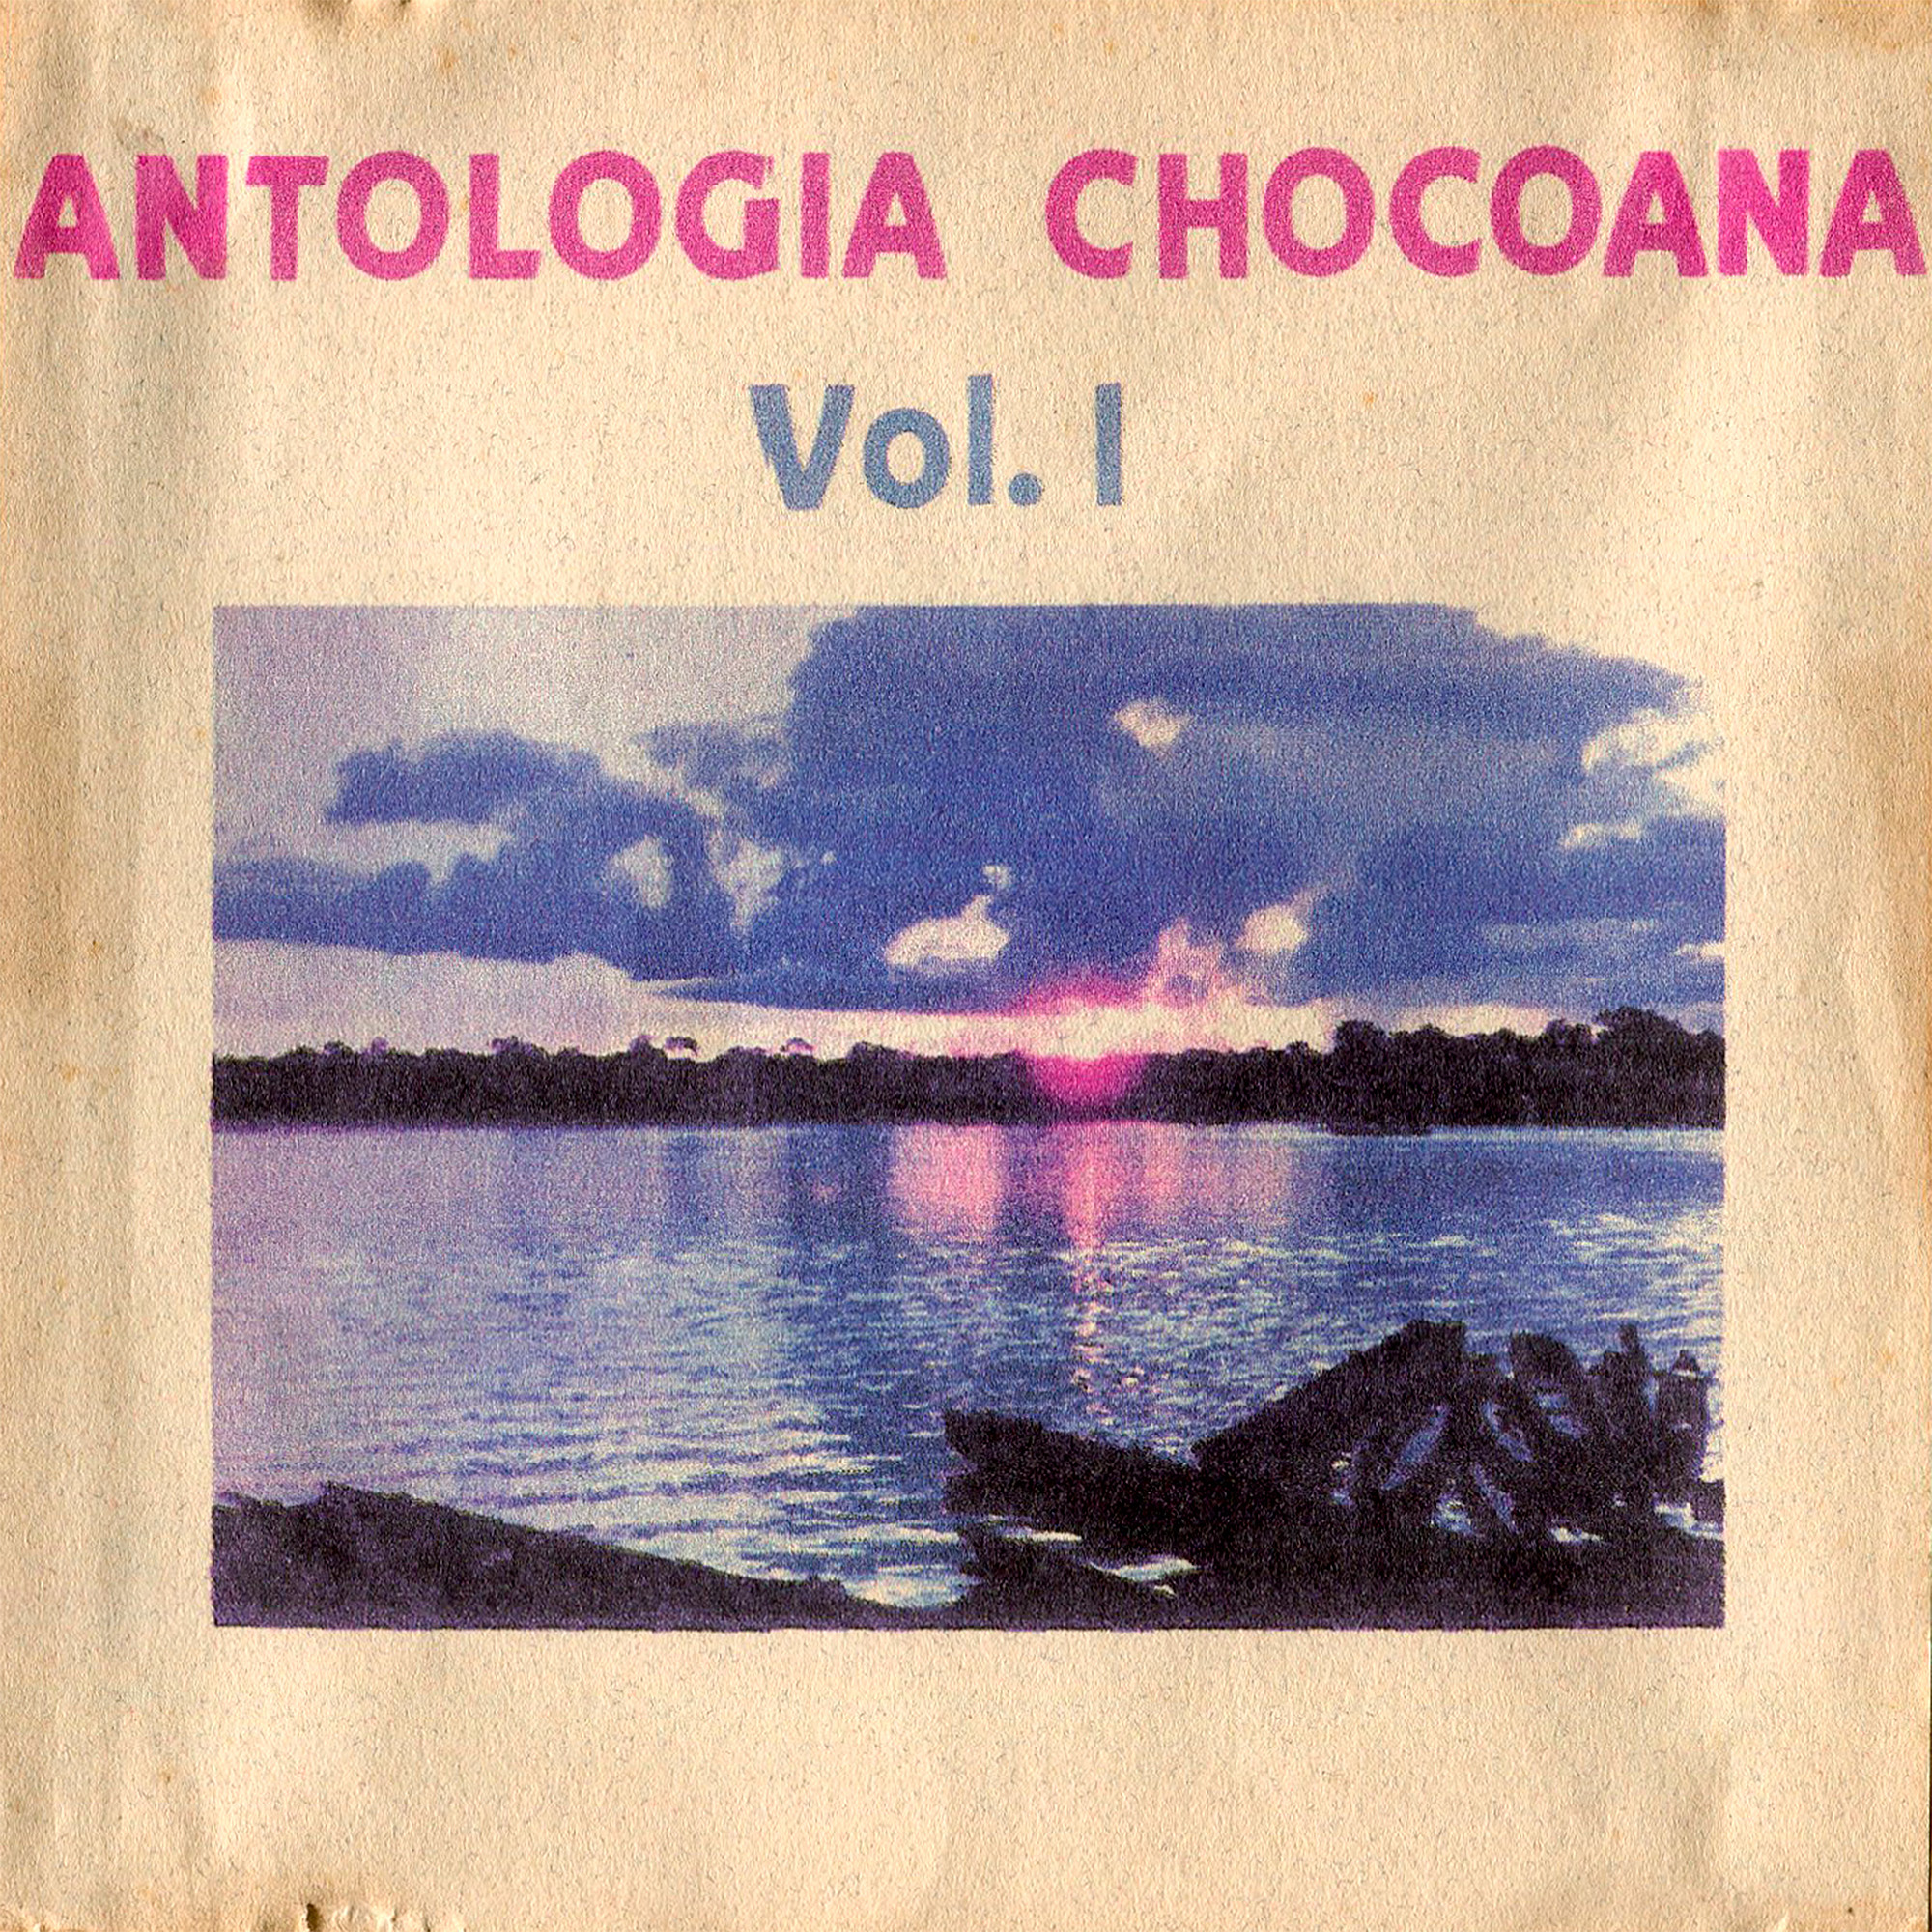 Antología Chocoana Vol 1Marcelino Ramirez "Panadero y sus Muchachos"